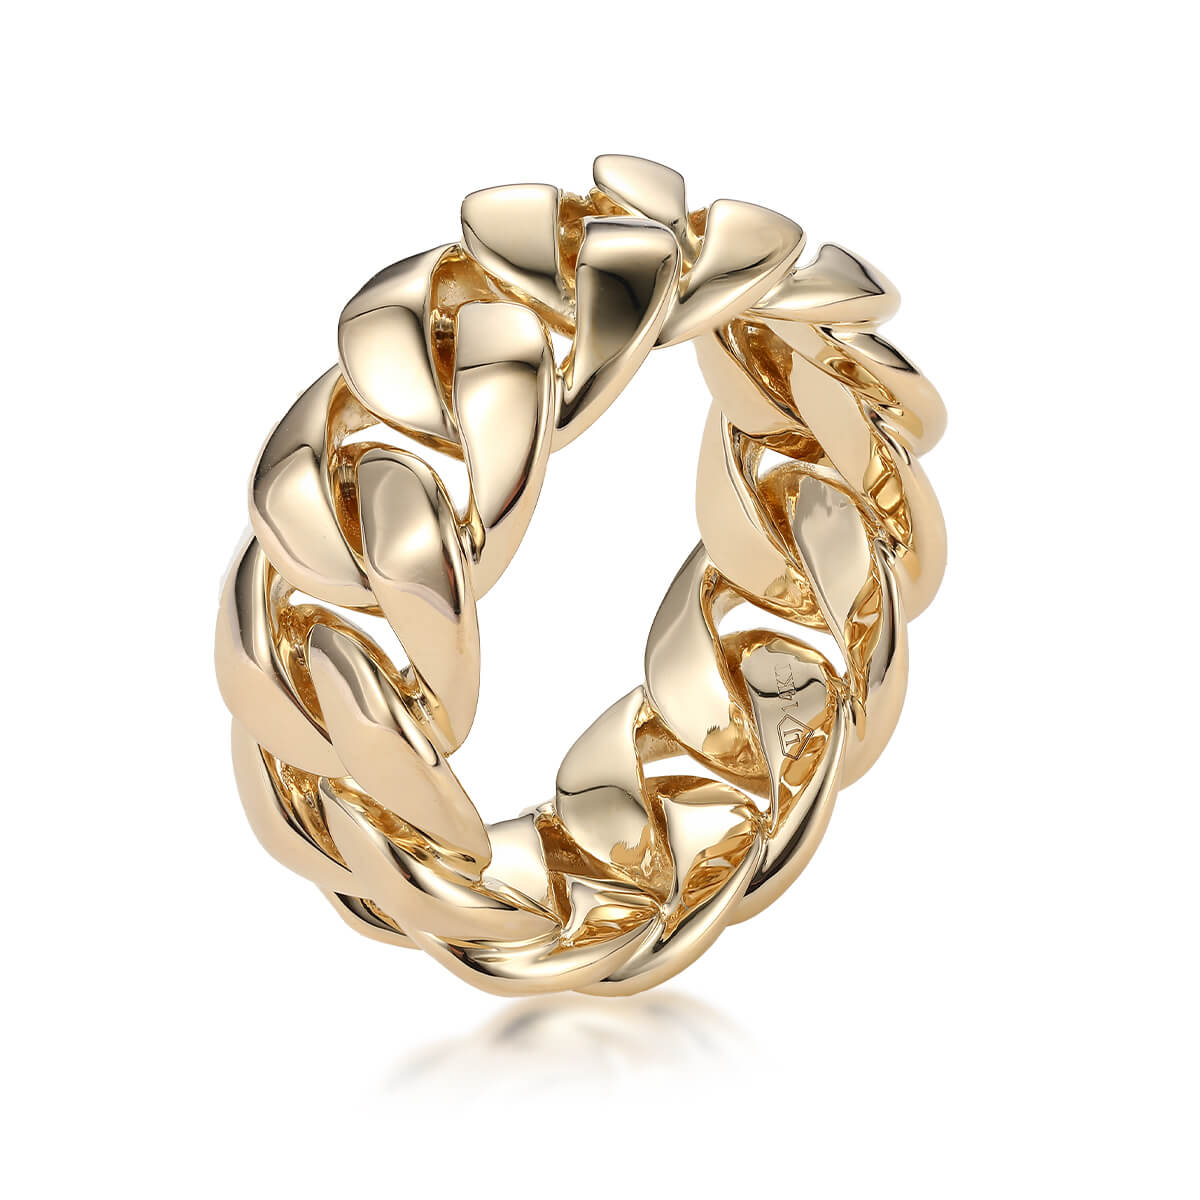 Chain Ring - 10k Yellow Gold, Handmade